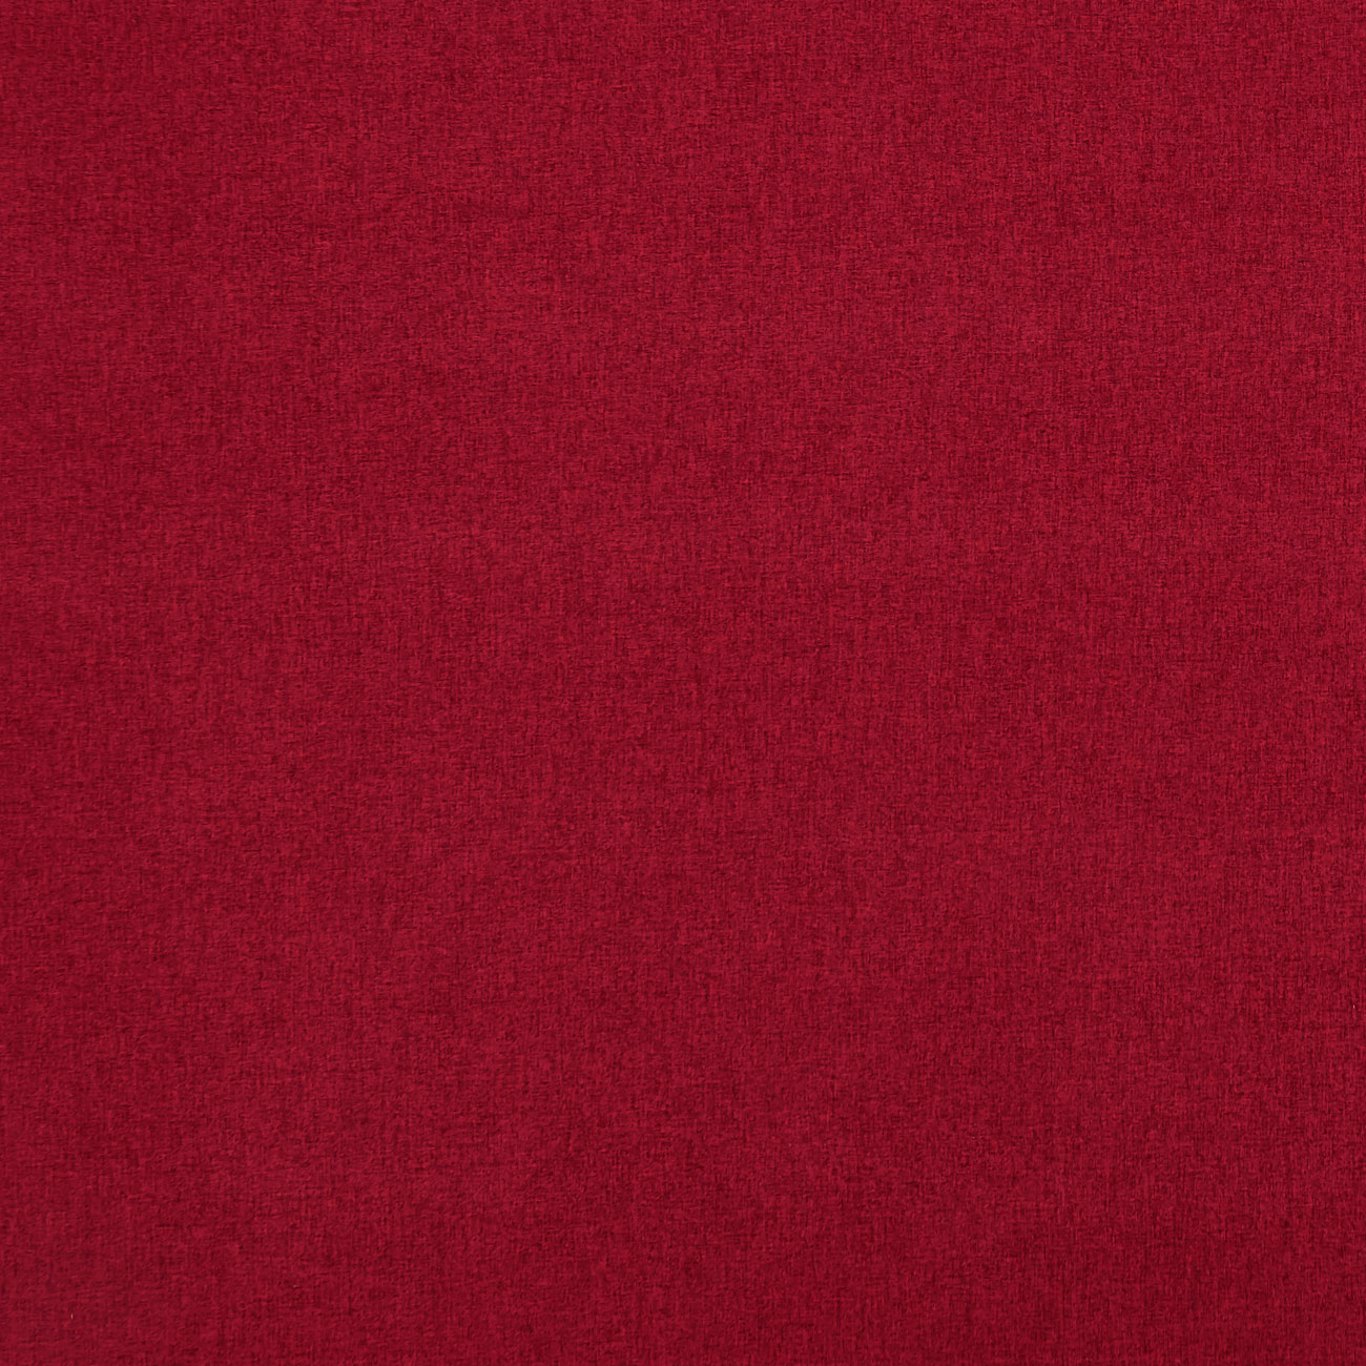 Highlander Ruby Fabric by CNC